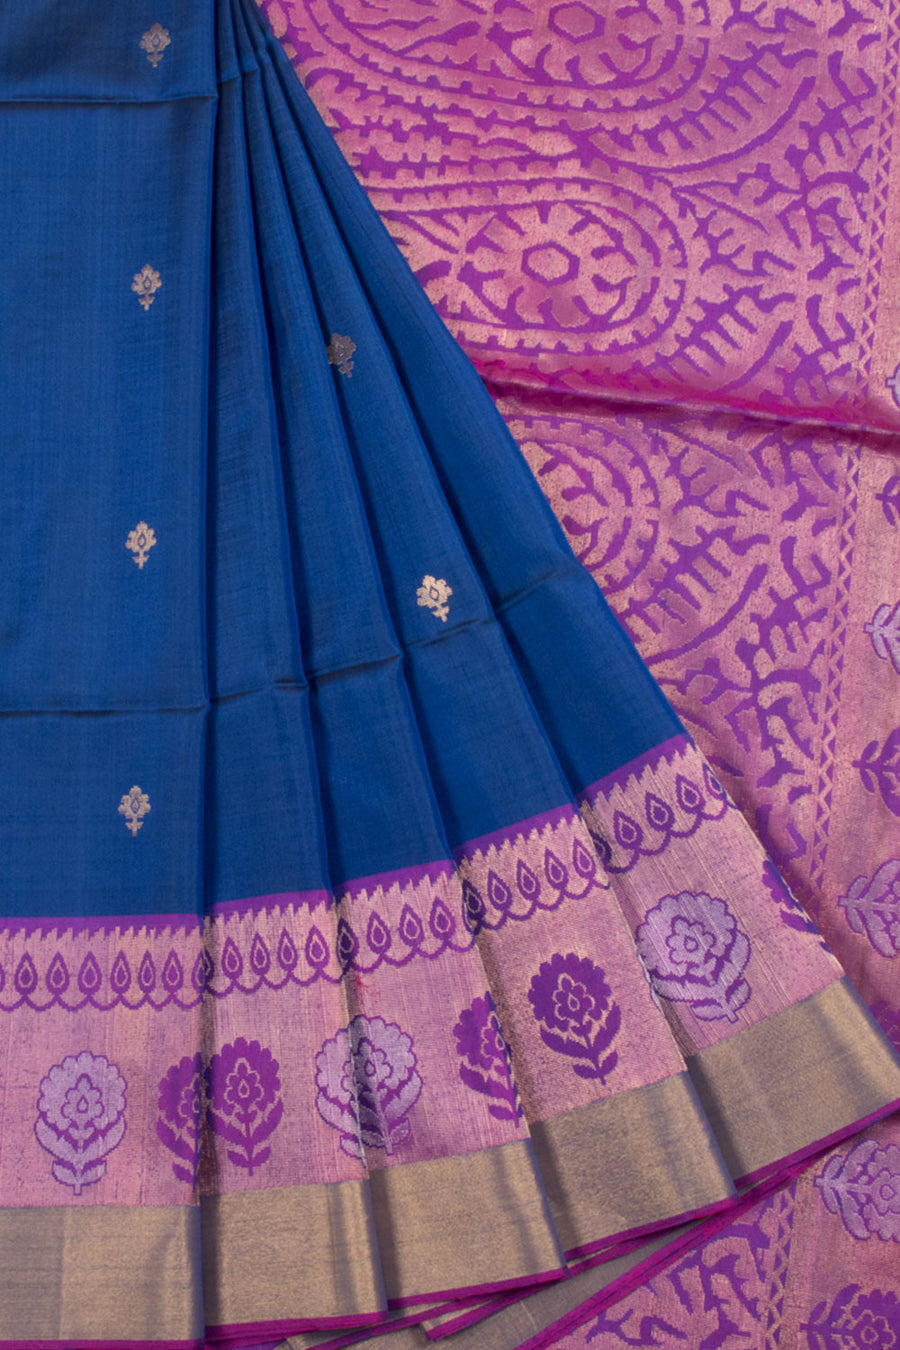 Handloom Kanjivaram Soft Silk Saree with Floral Motifs, Floral Butta Border and Floral Geometric Pallu